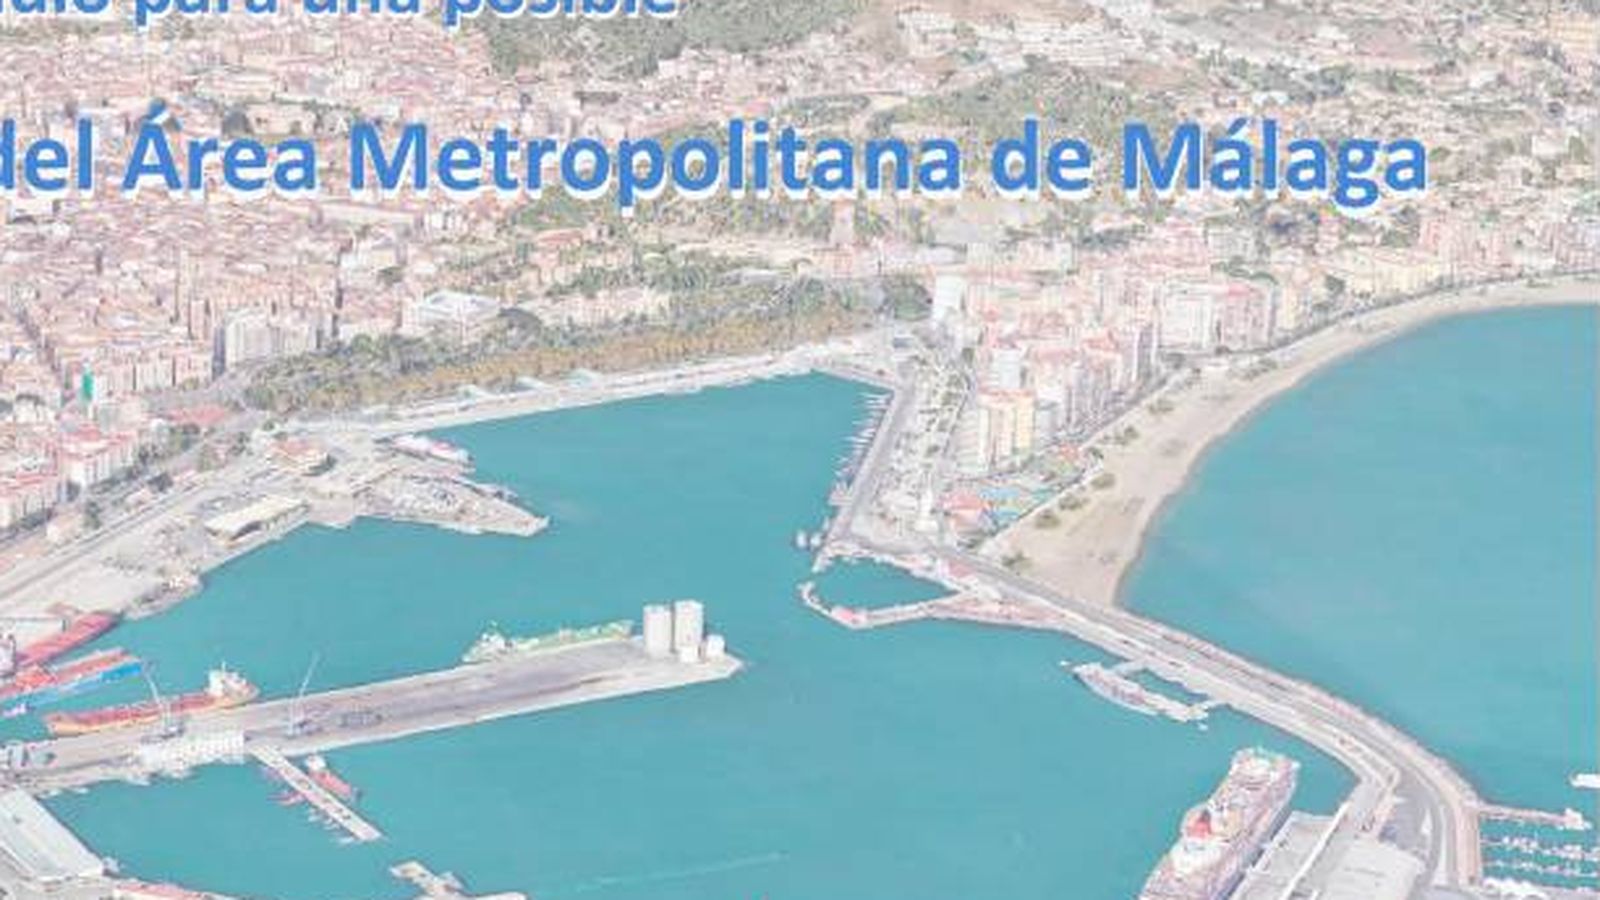 Foto: Portada del estudio del proyecto de la vía perimetral de la provincia de Málaga.